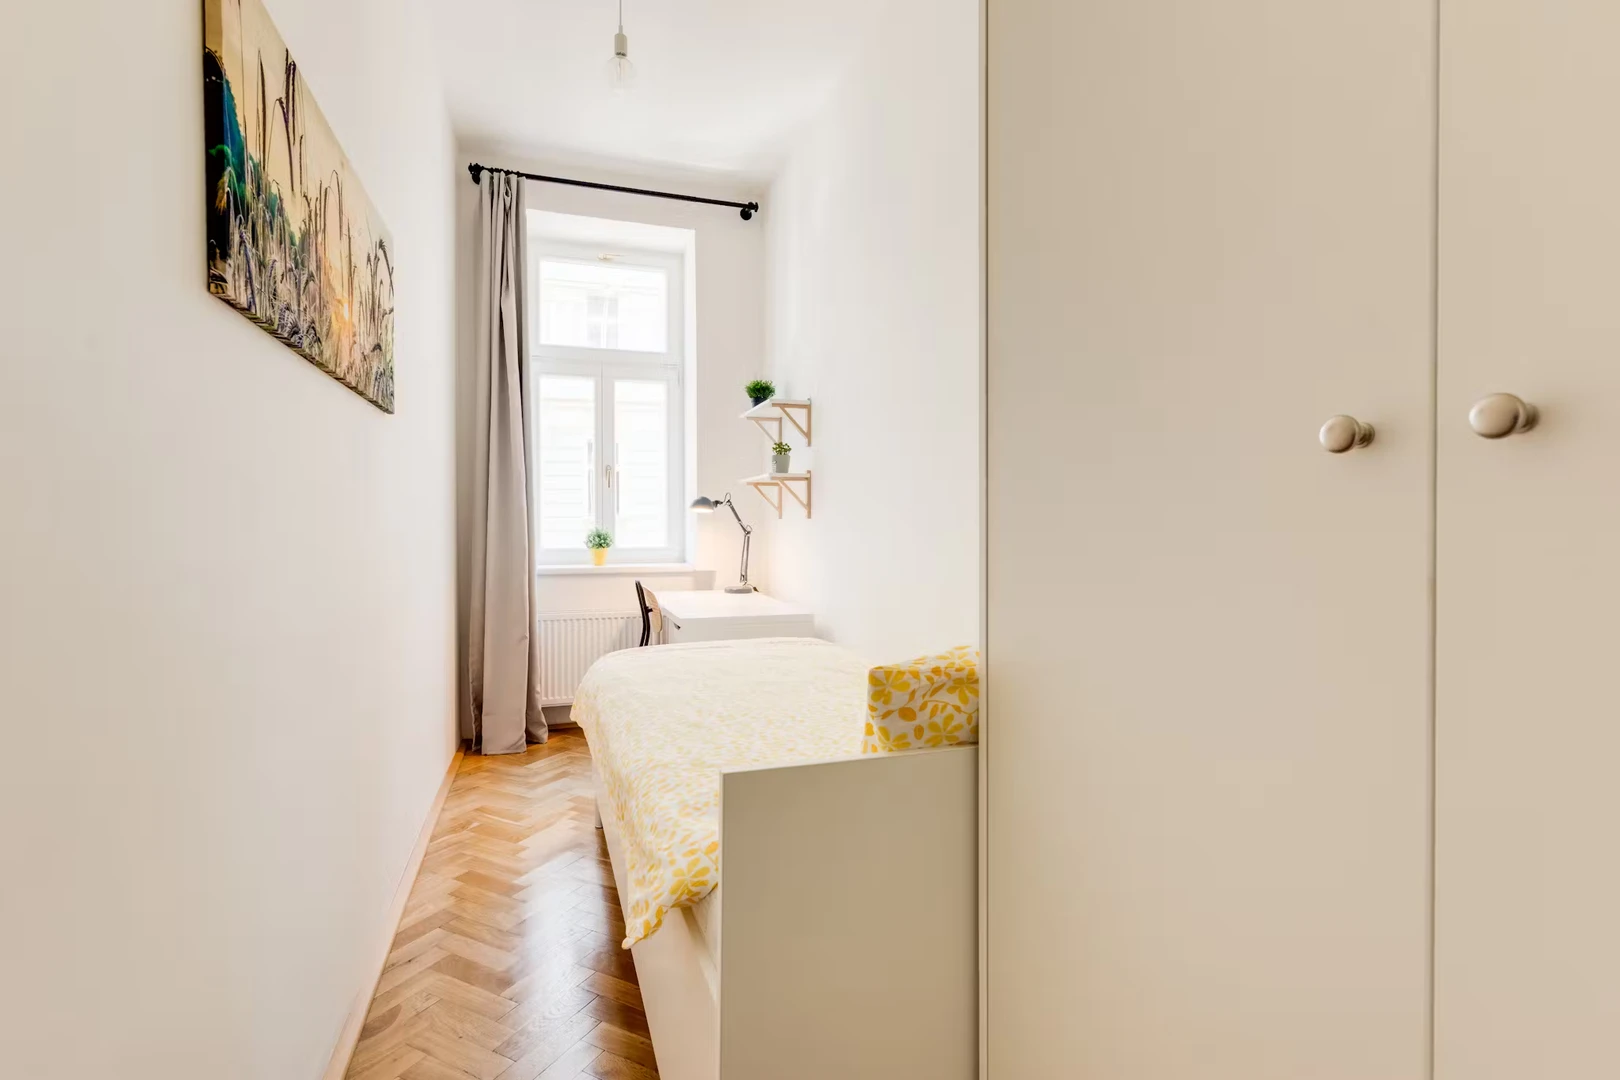 Praha de çift kişilik yataklı kiralık oda